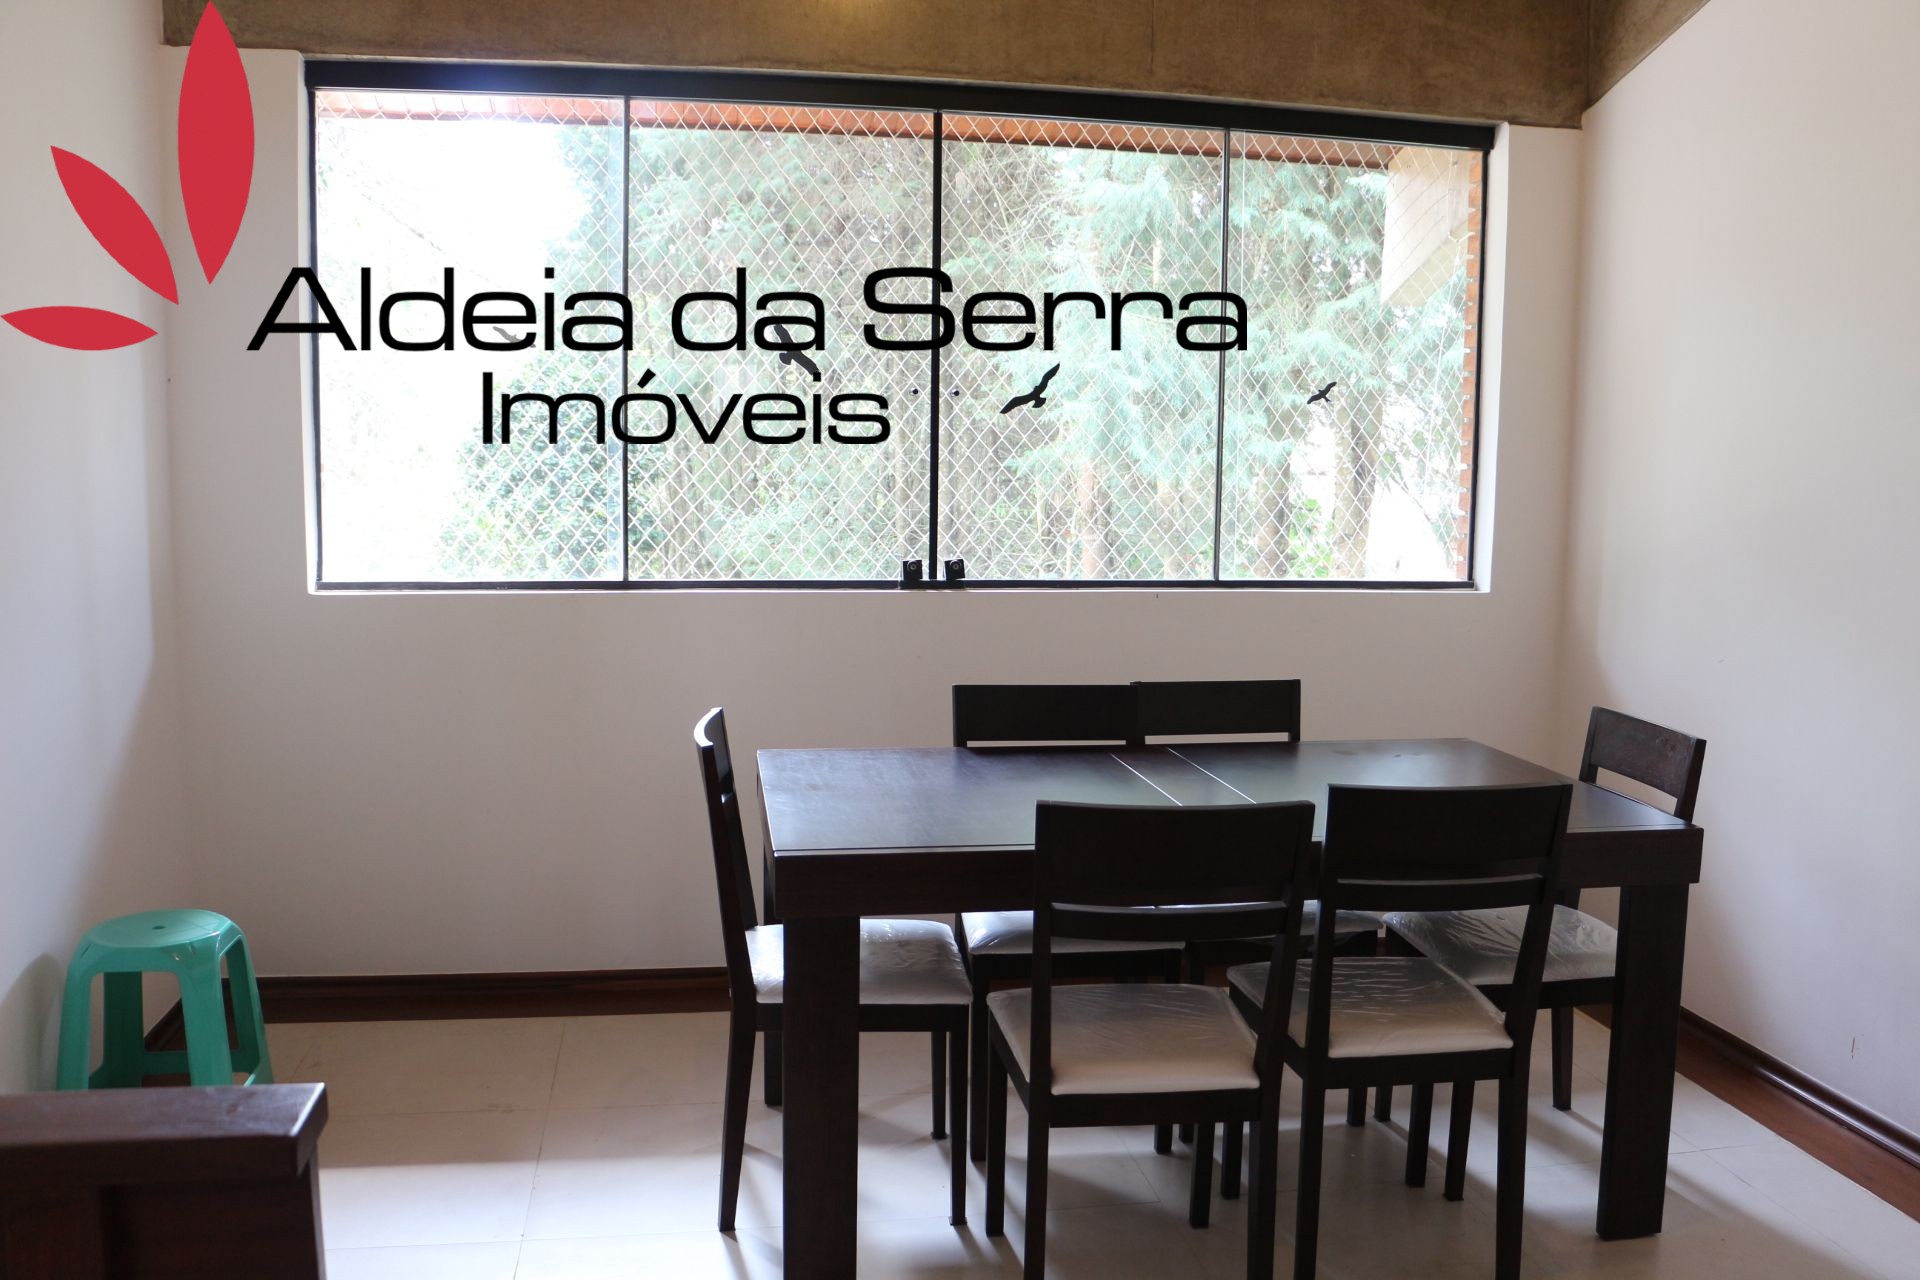 /admin/imoveis/fotos/Xq5dIyWw.jpg Aldeia da Serra Imoveis